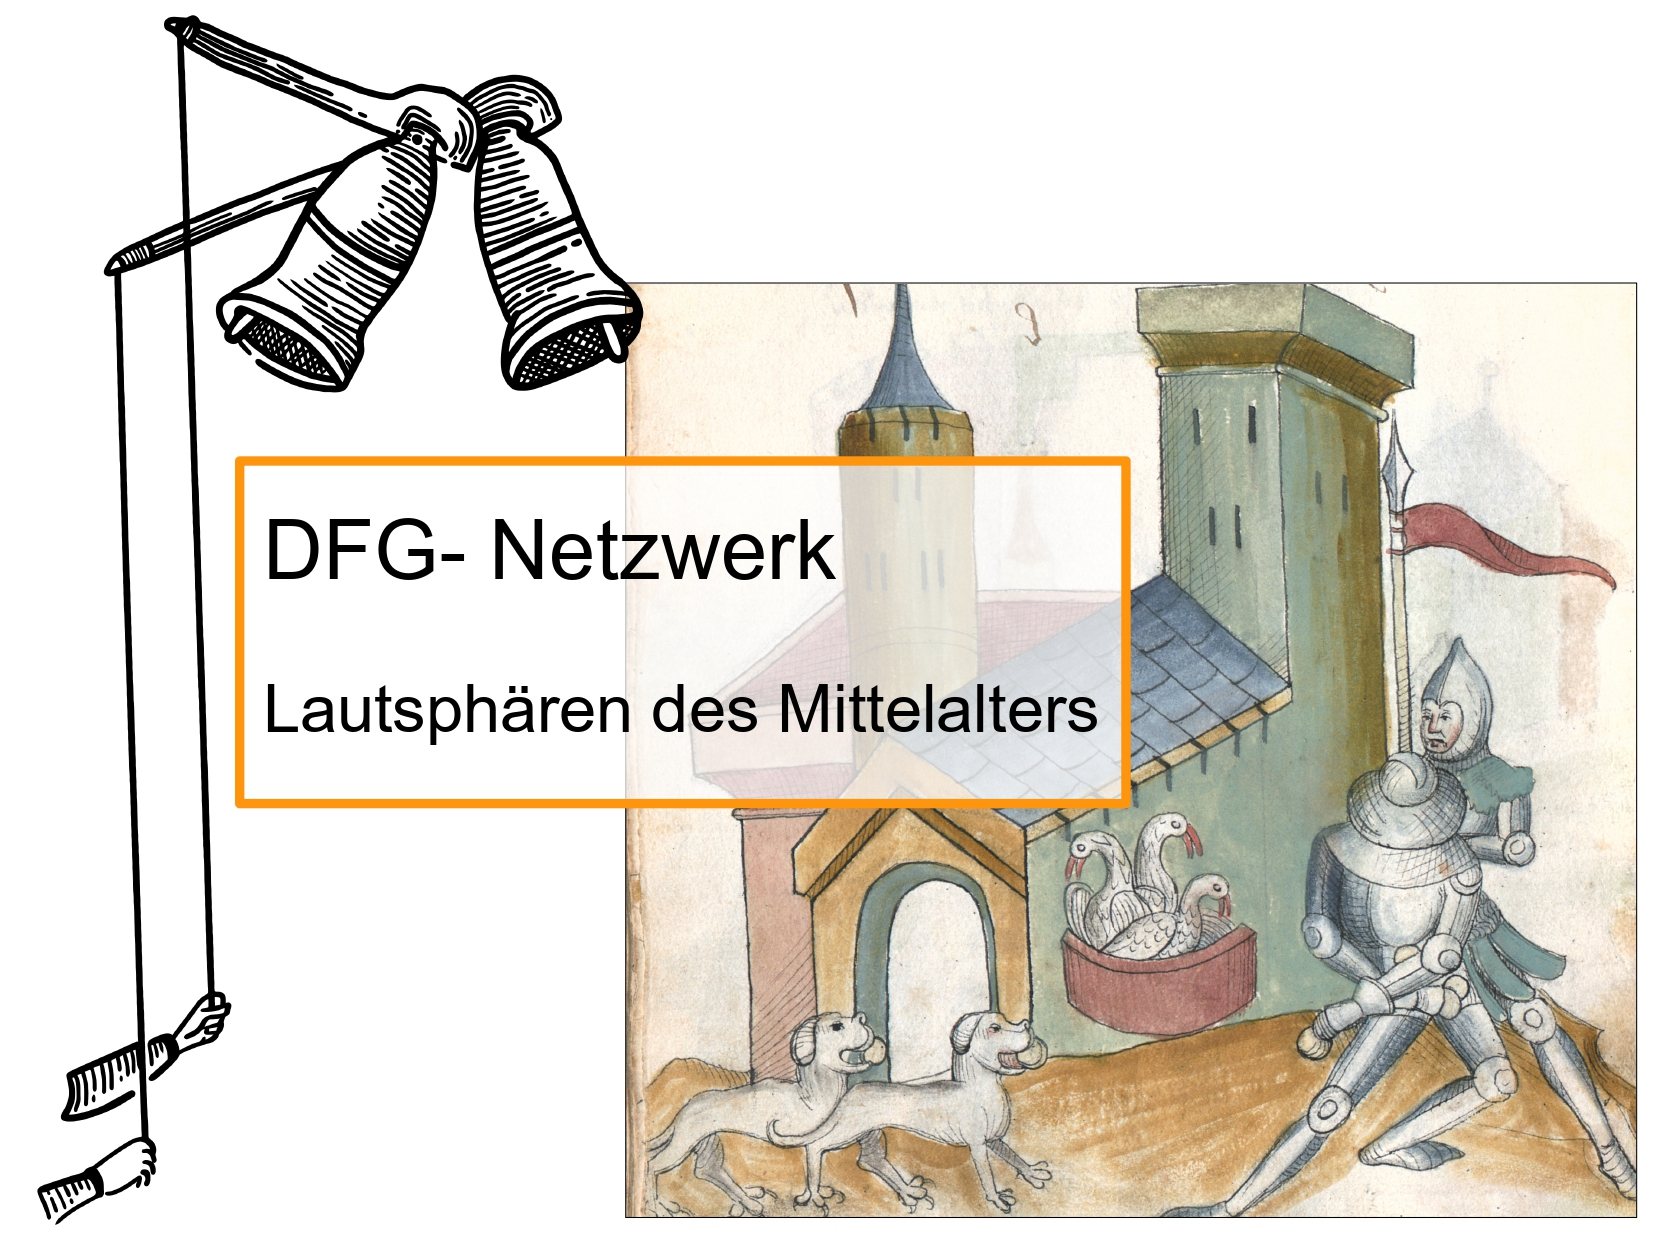 Grafik und Überschrift "DFG-Netzwerk Lautsphären des Mittelalters"